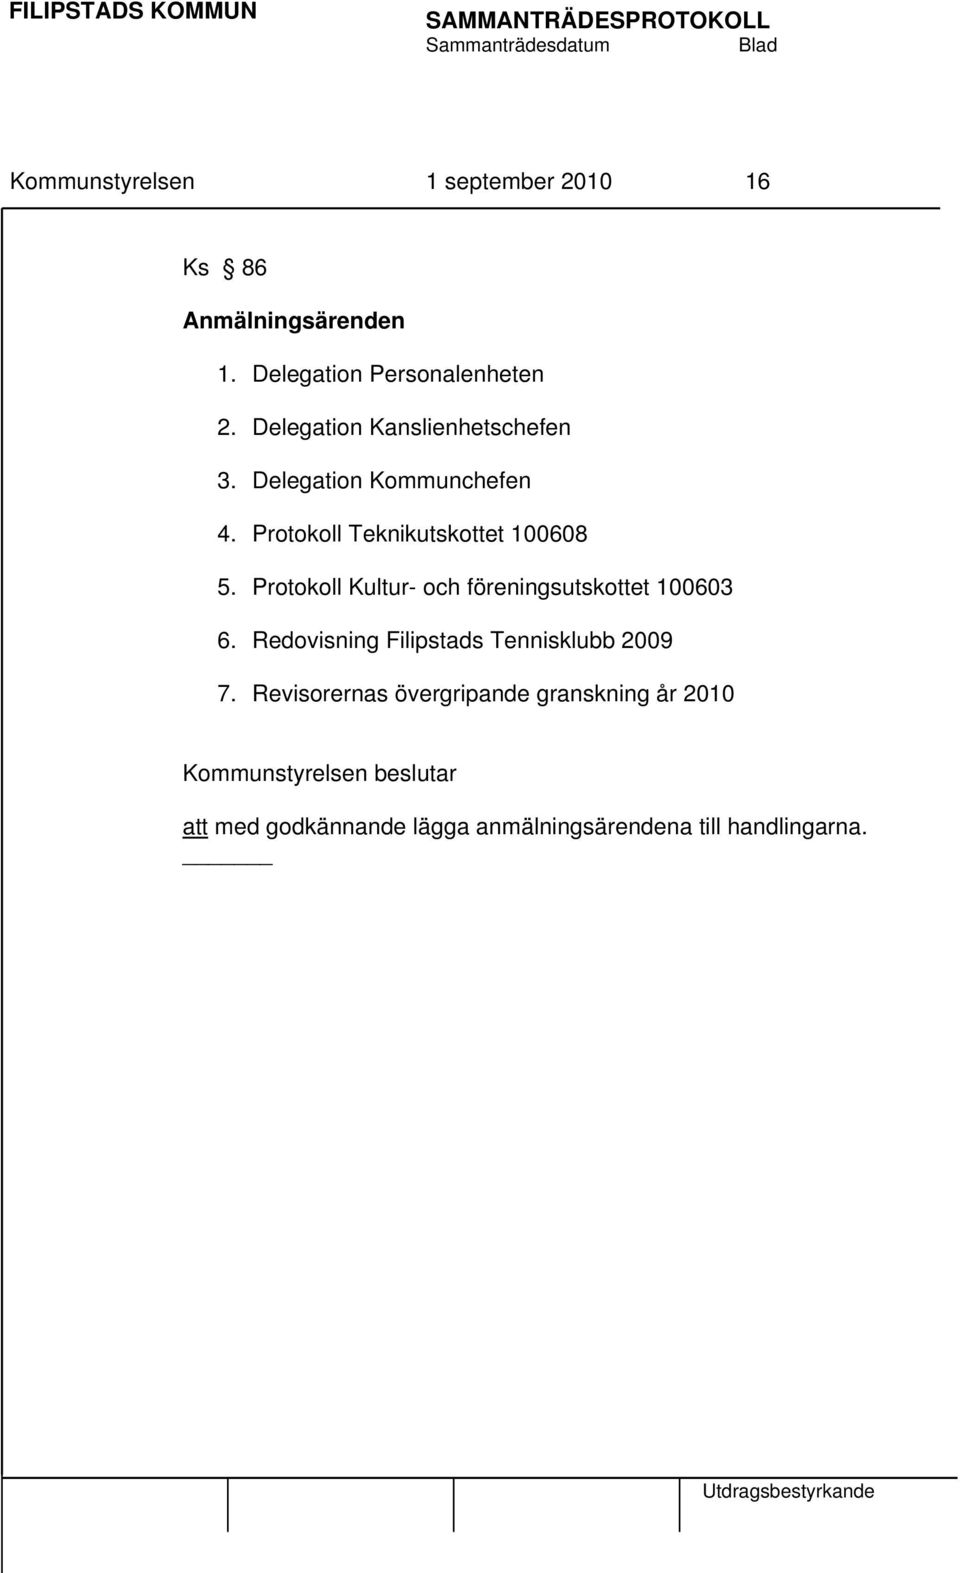 Protokoll Kultur- och föreningsutskottet 100603 6. Redovisning Filipstads Tennisklubb 2009 7.